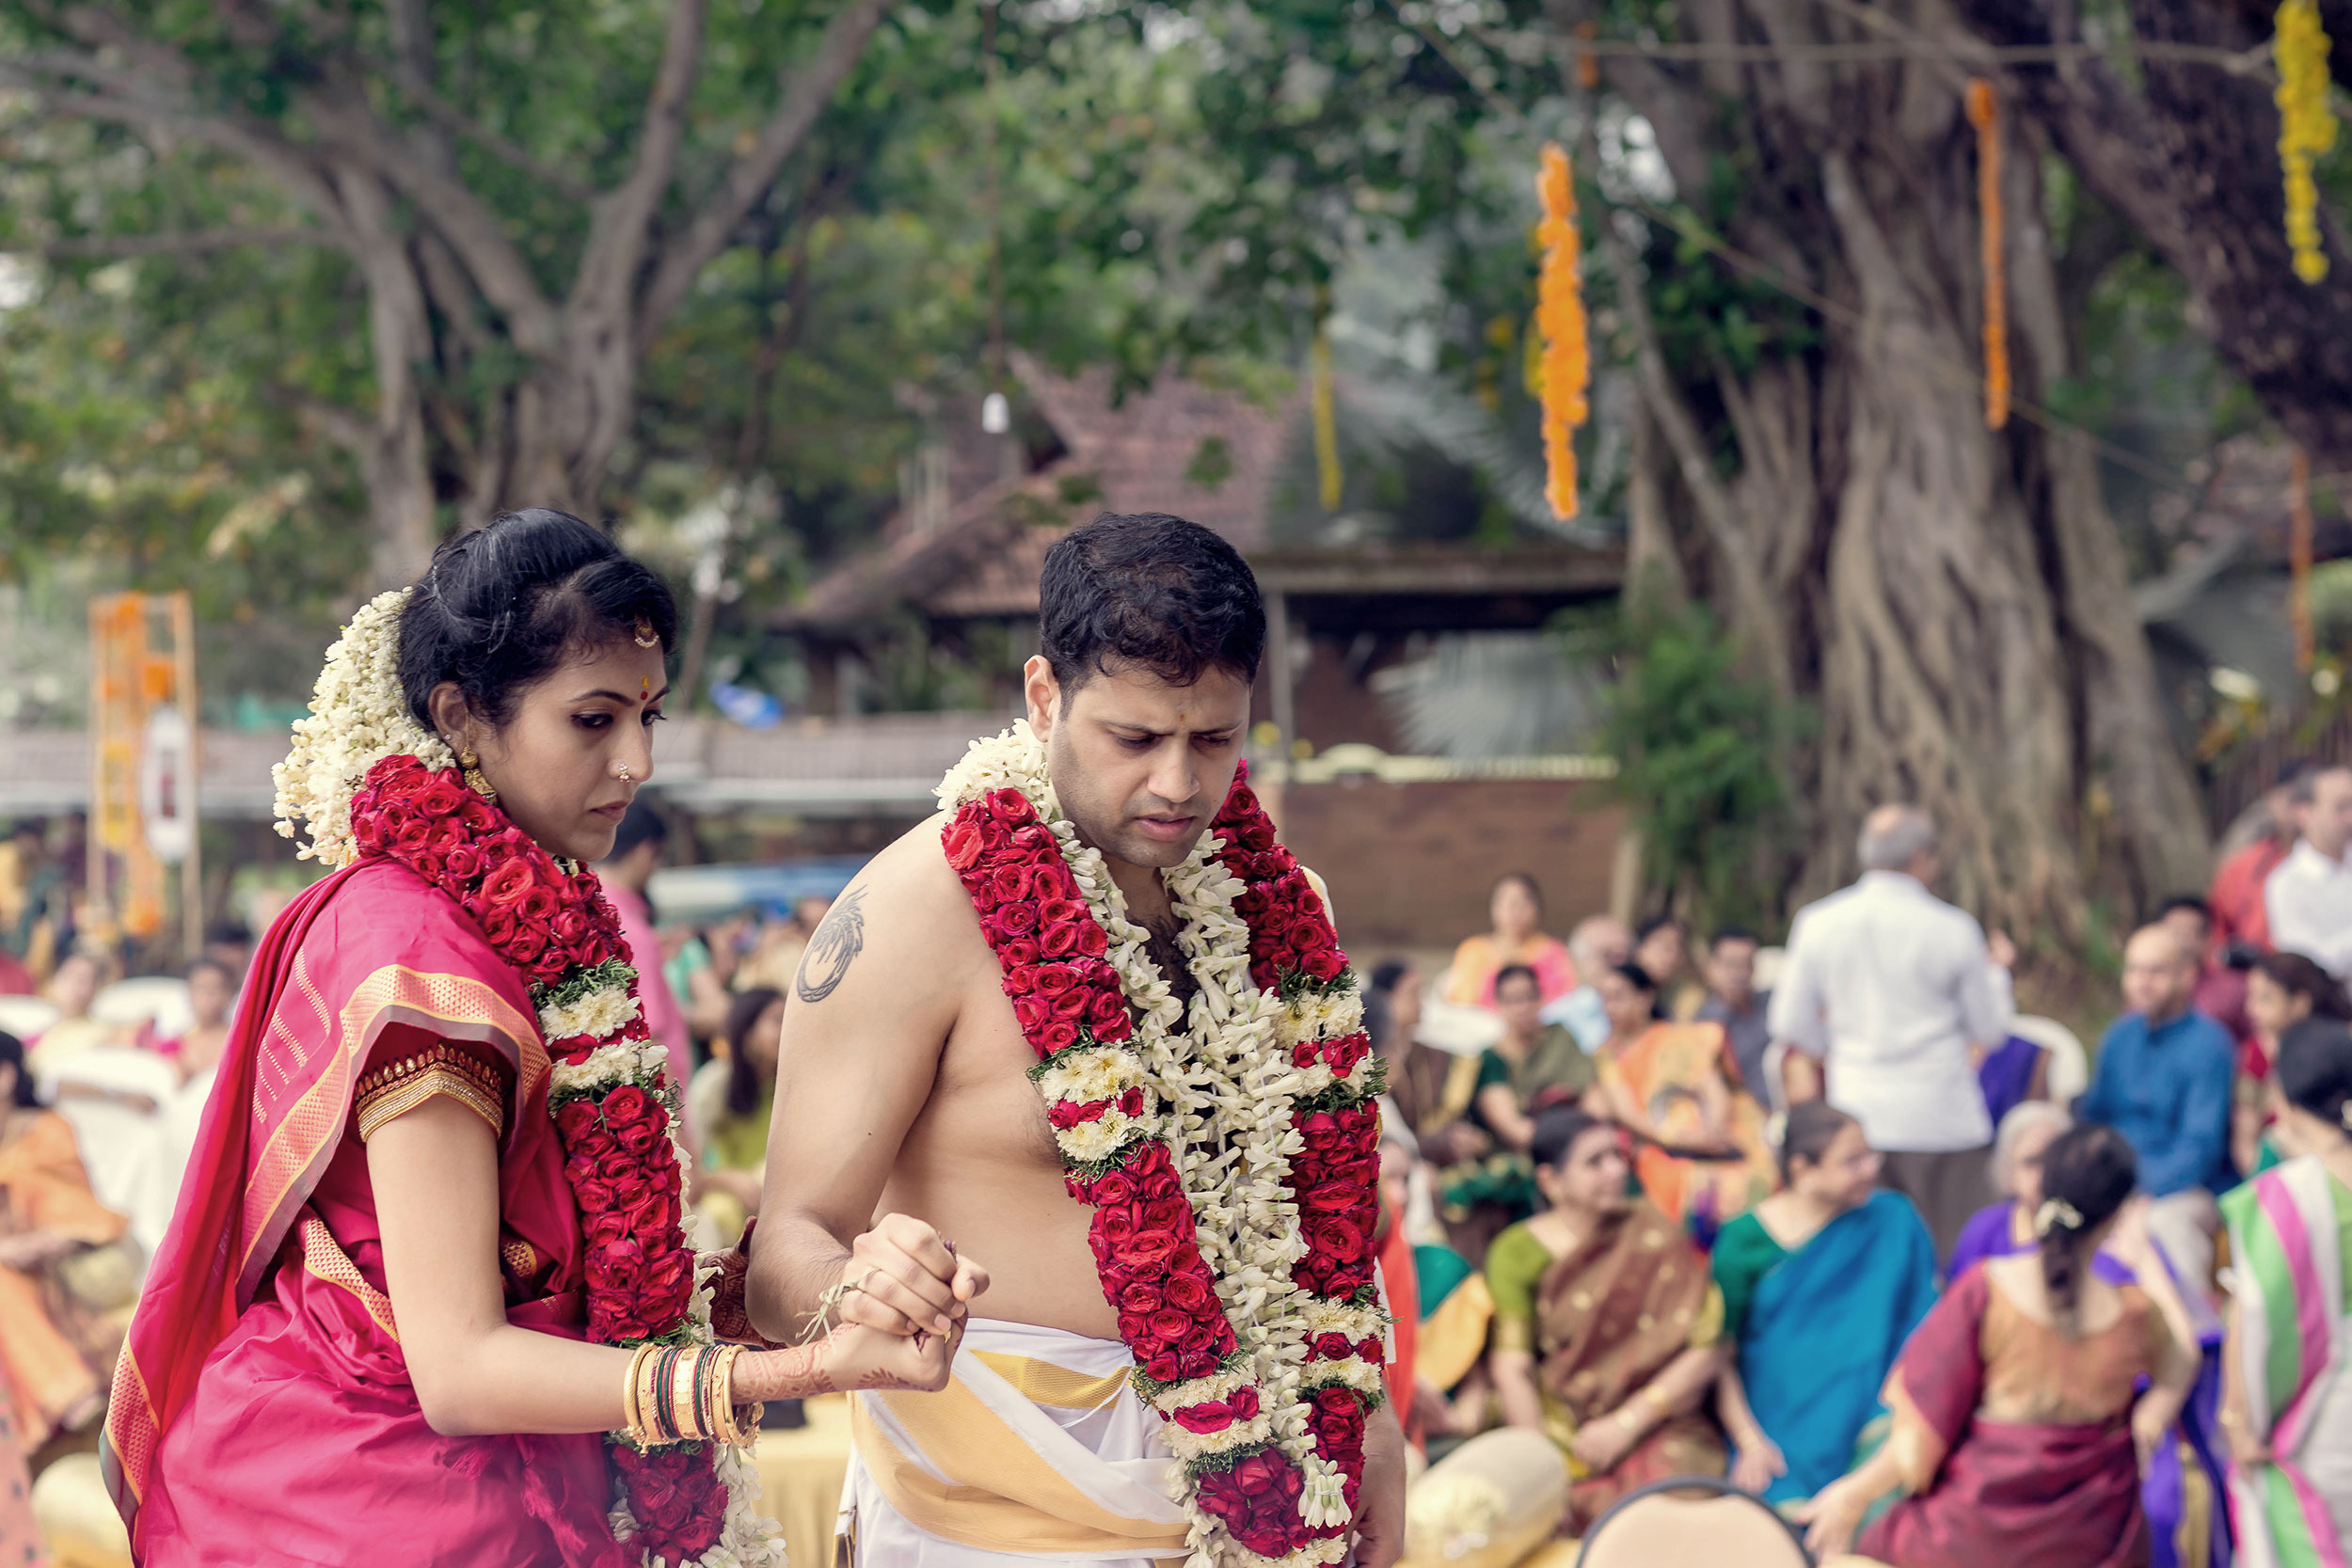 Indian wedding photography